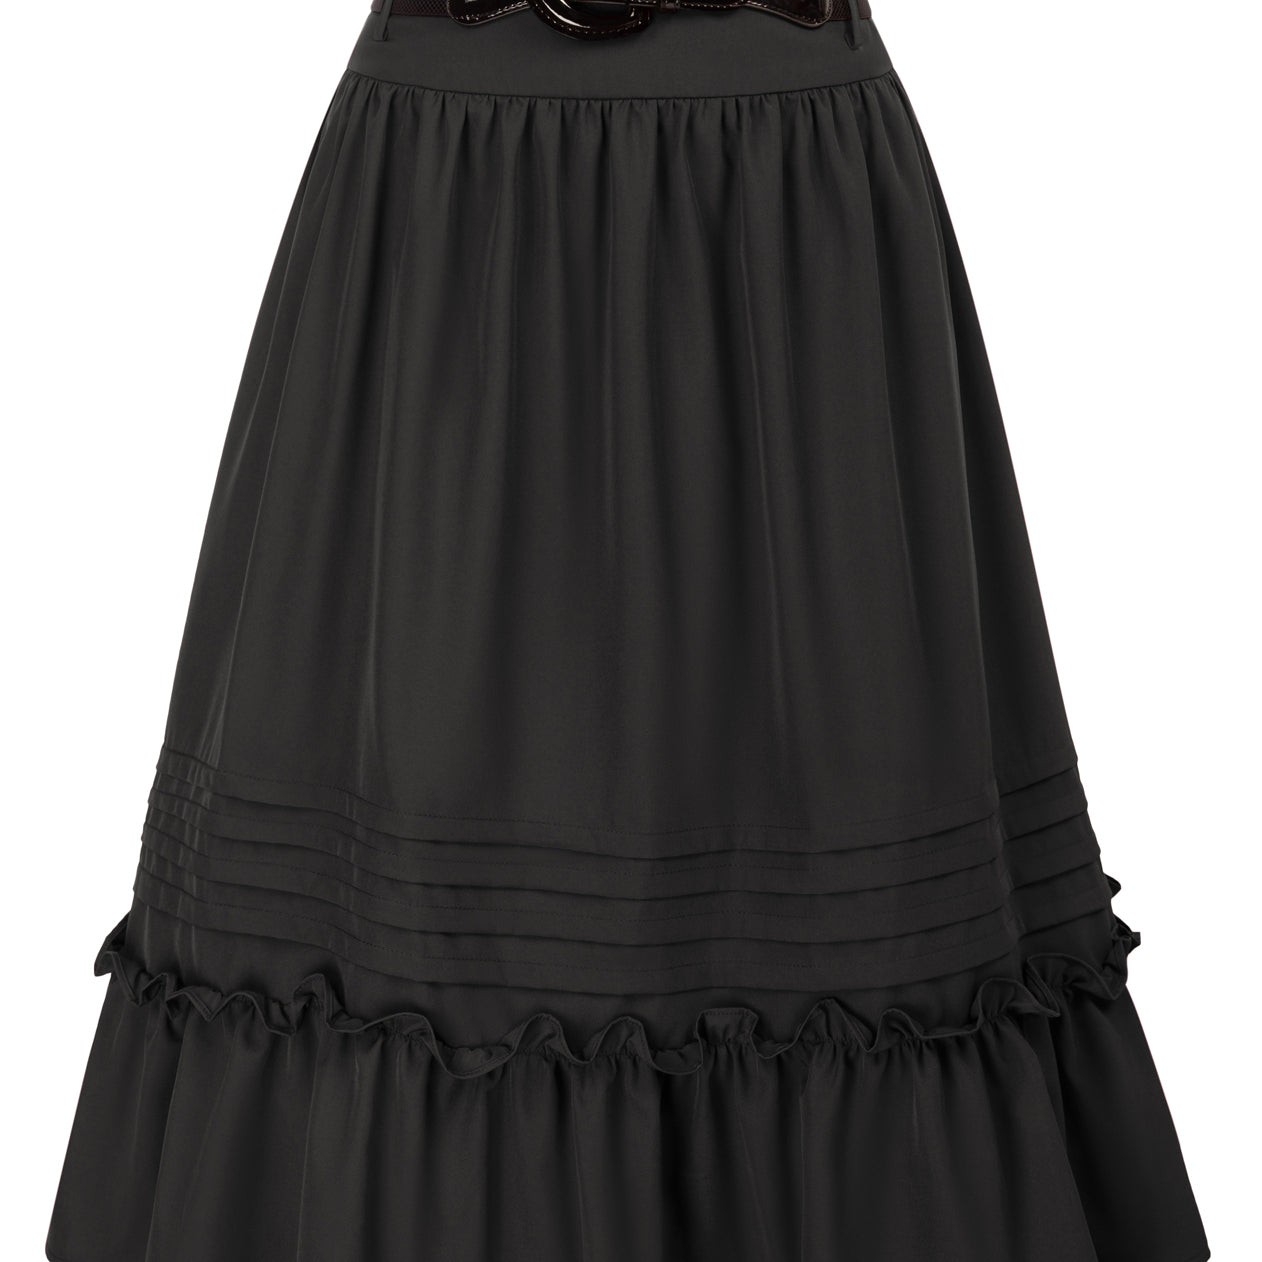 Seckill Offer⌛Belt Decorated Skirt Elastic High Waist Tiered  A-Line Skirt